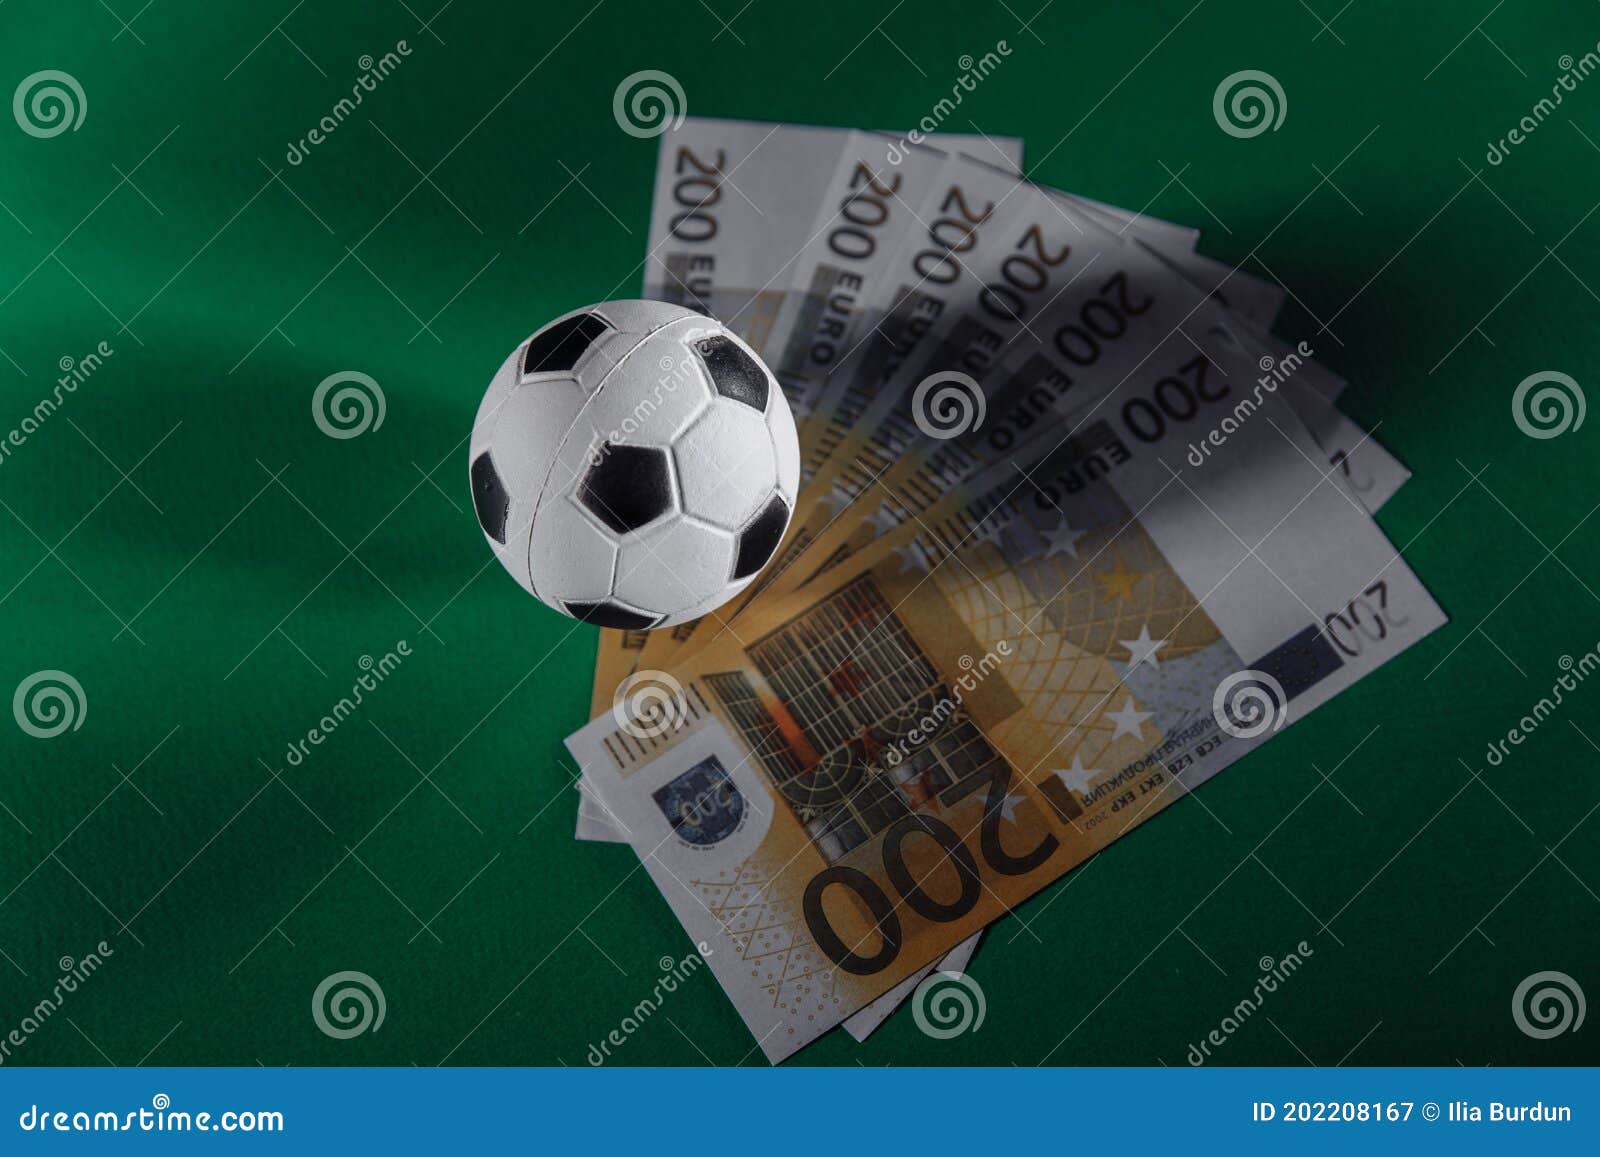 Como Ganhar Dinheiro com Jogos de Futebol